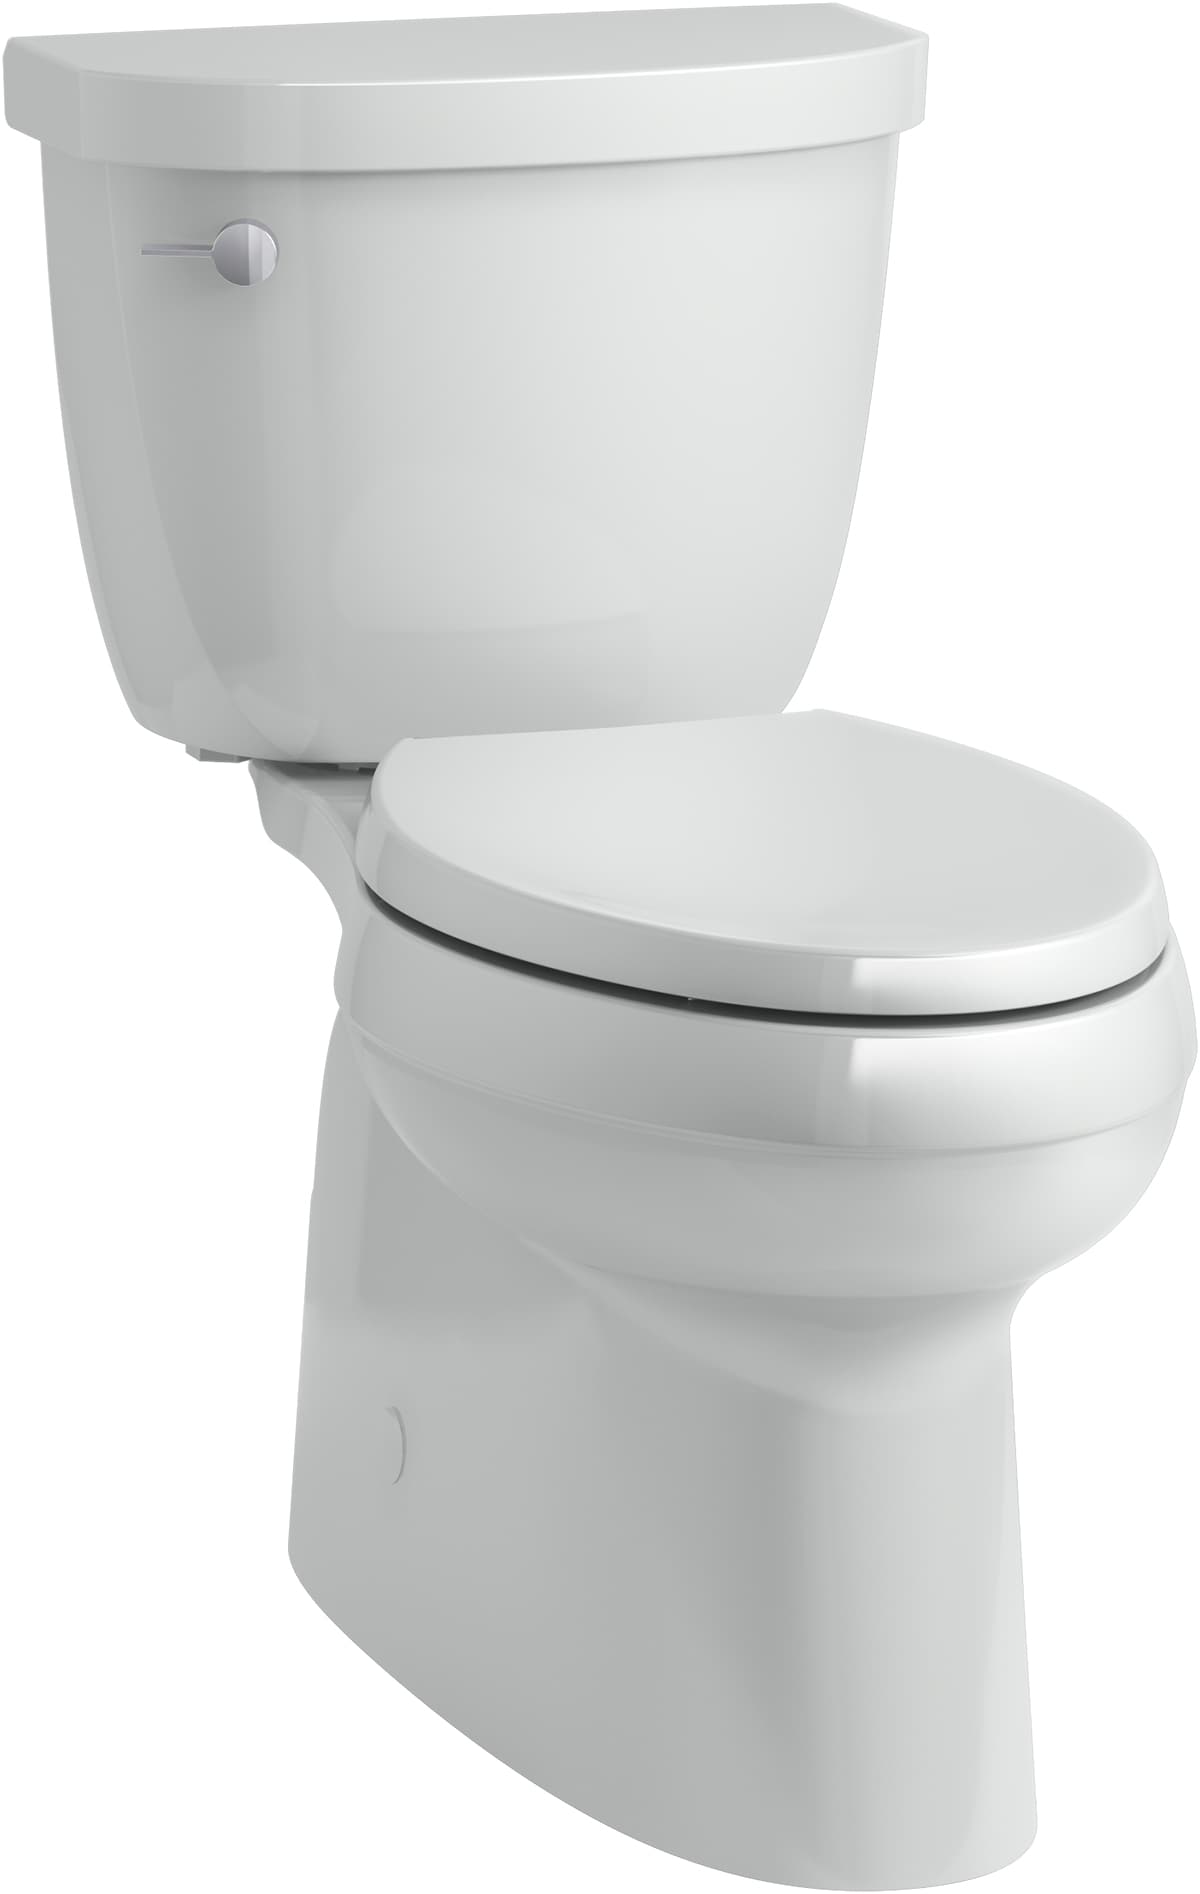 KOHLER Gray Toilets at Lowes.com